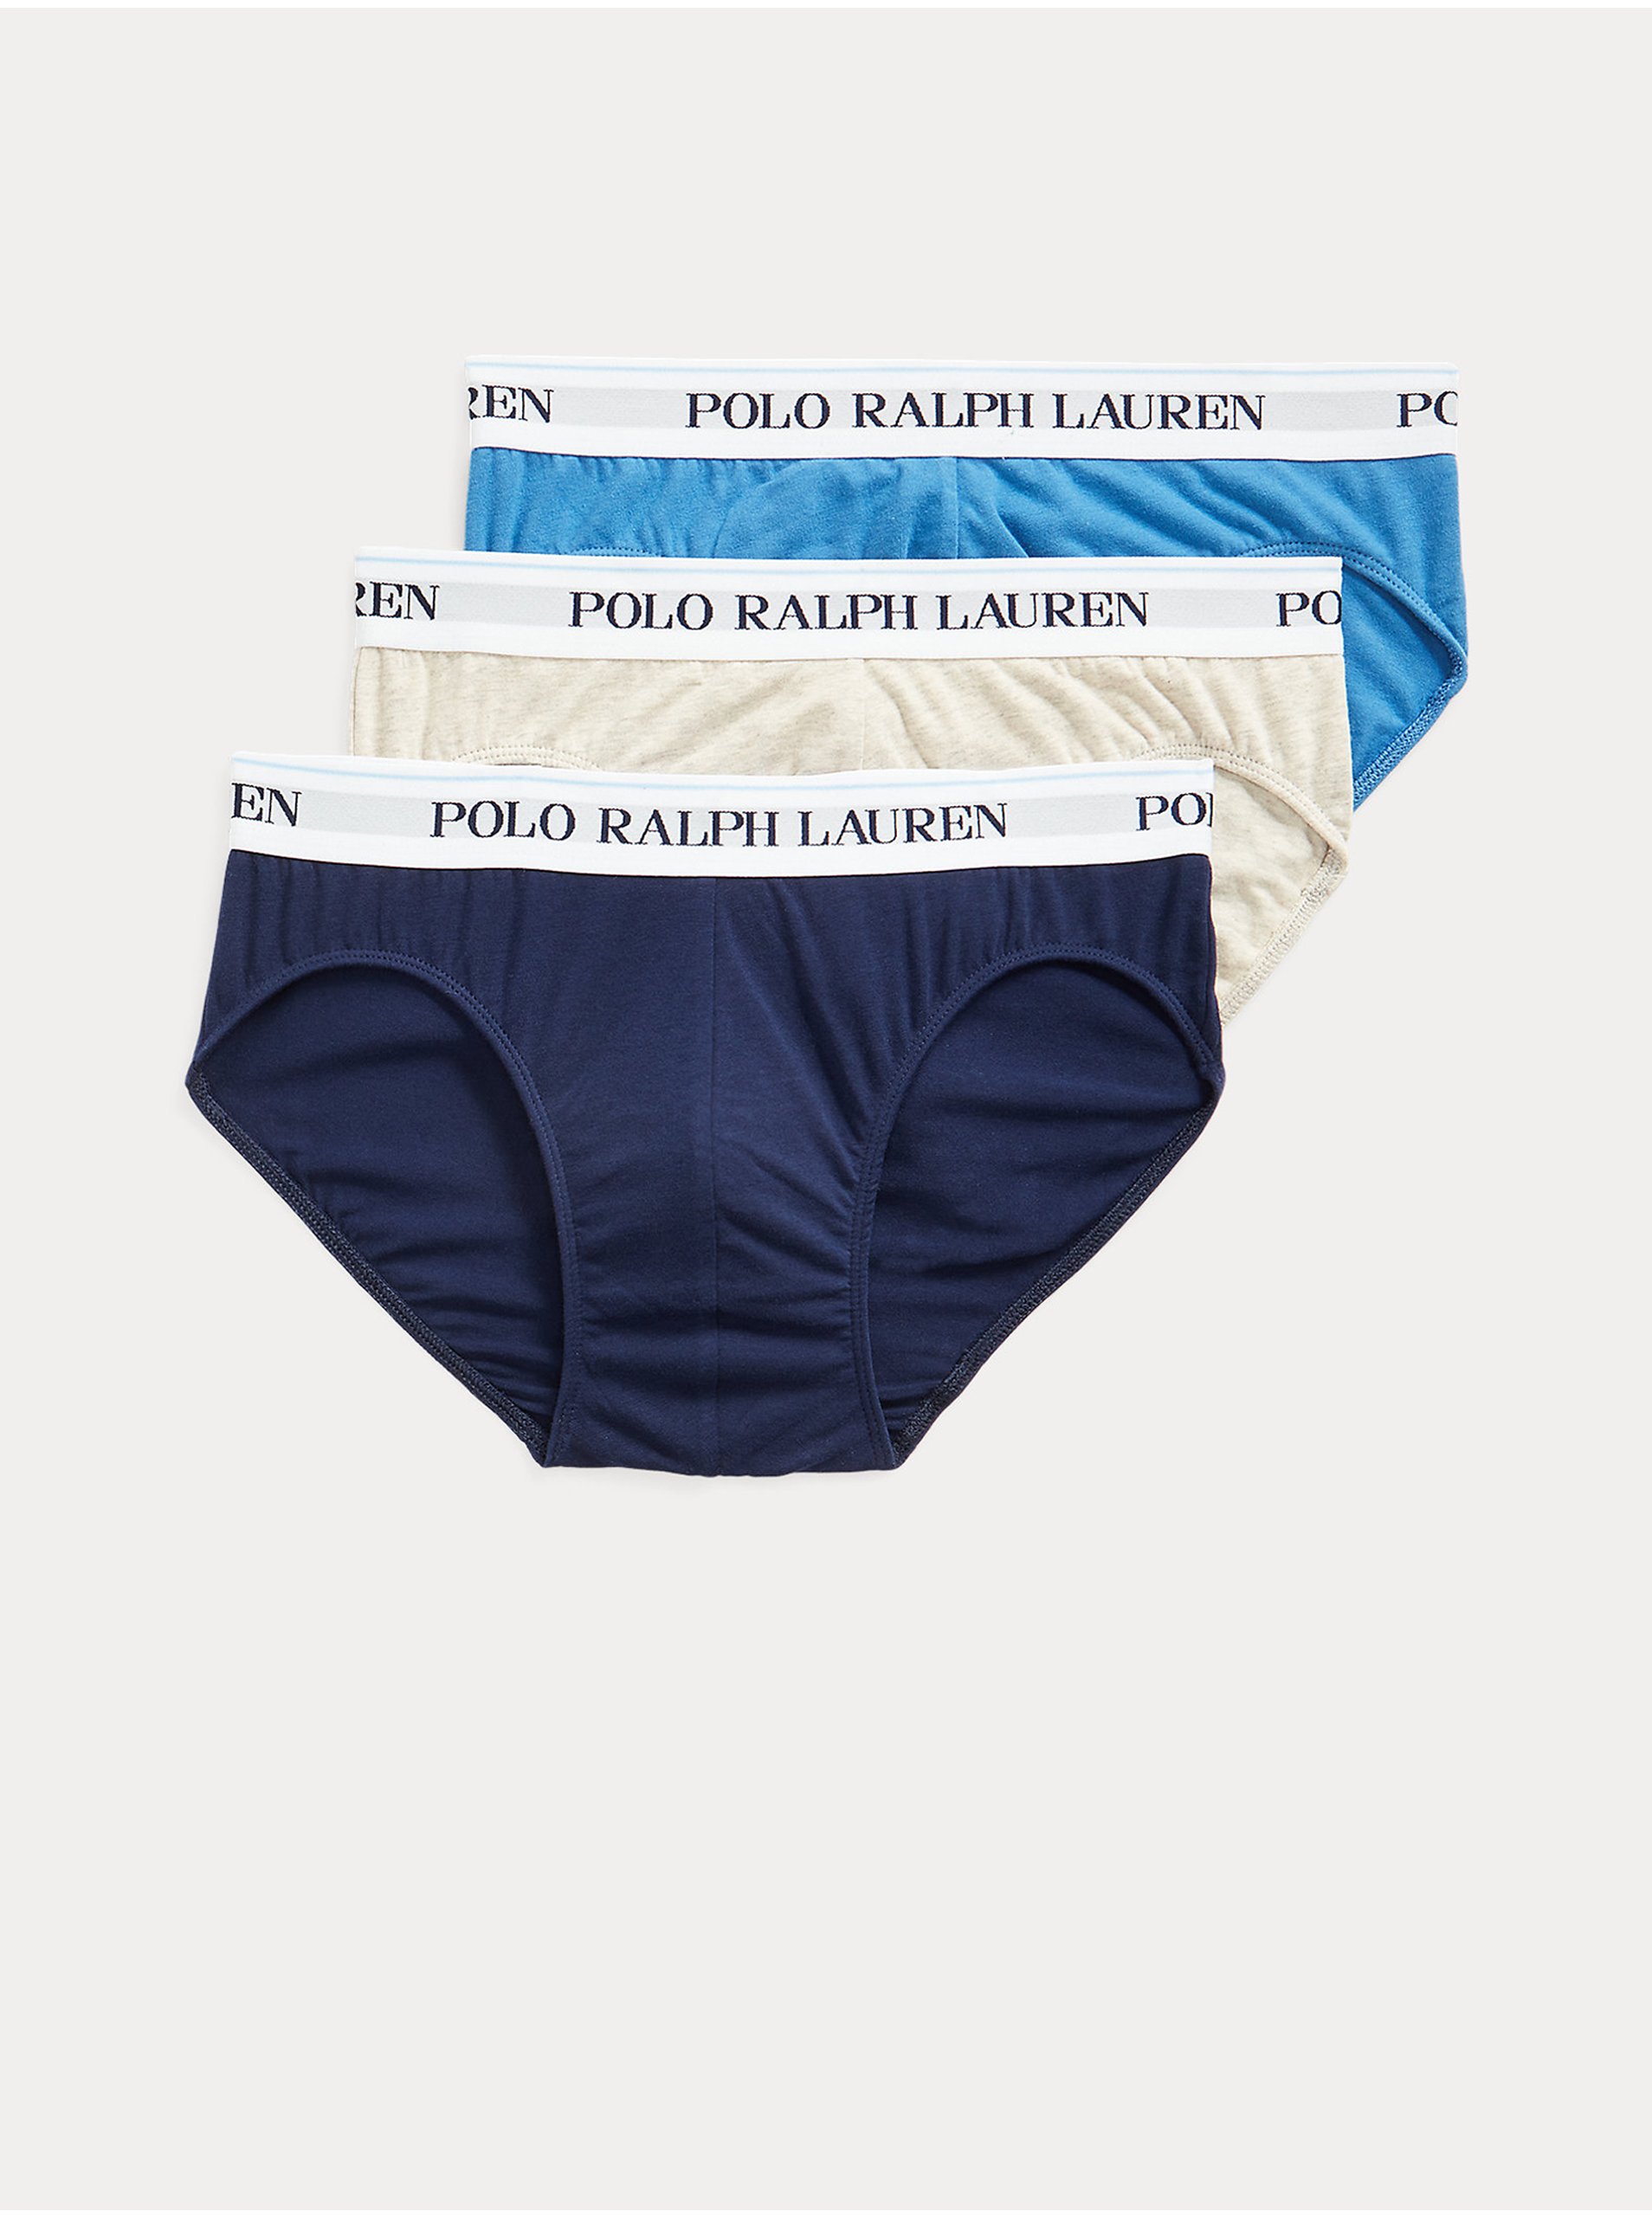 Lacno Slipy pre mužov POLO Ralph Lauren - modrá, tmavomodrá, krémová